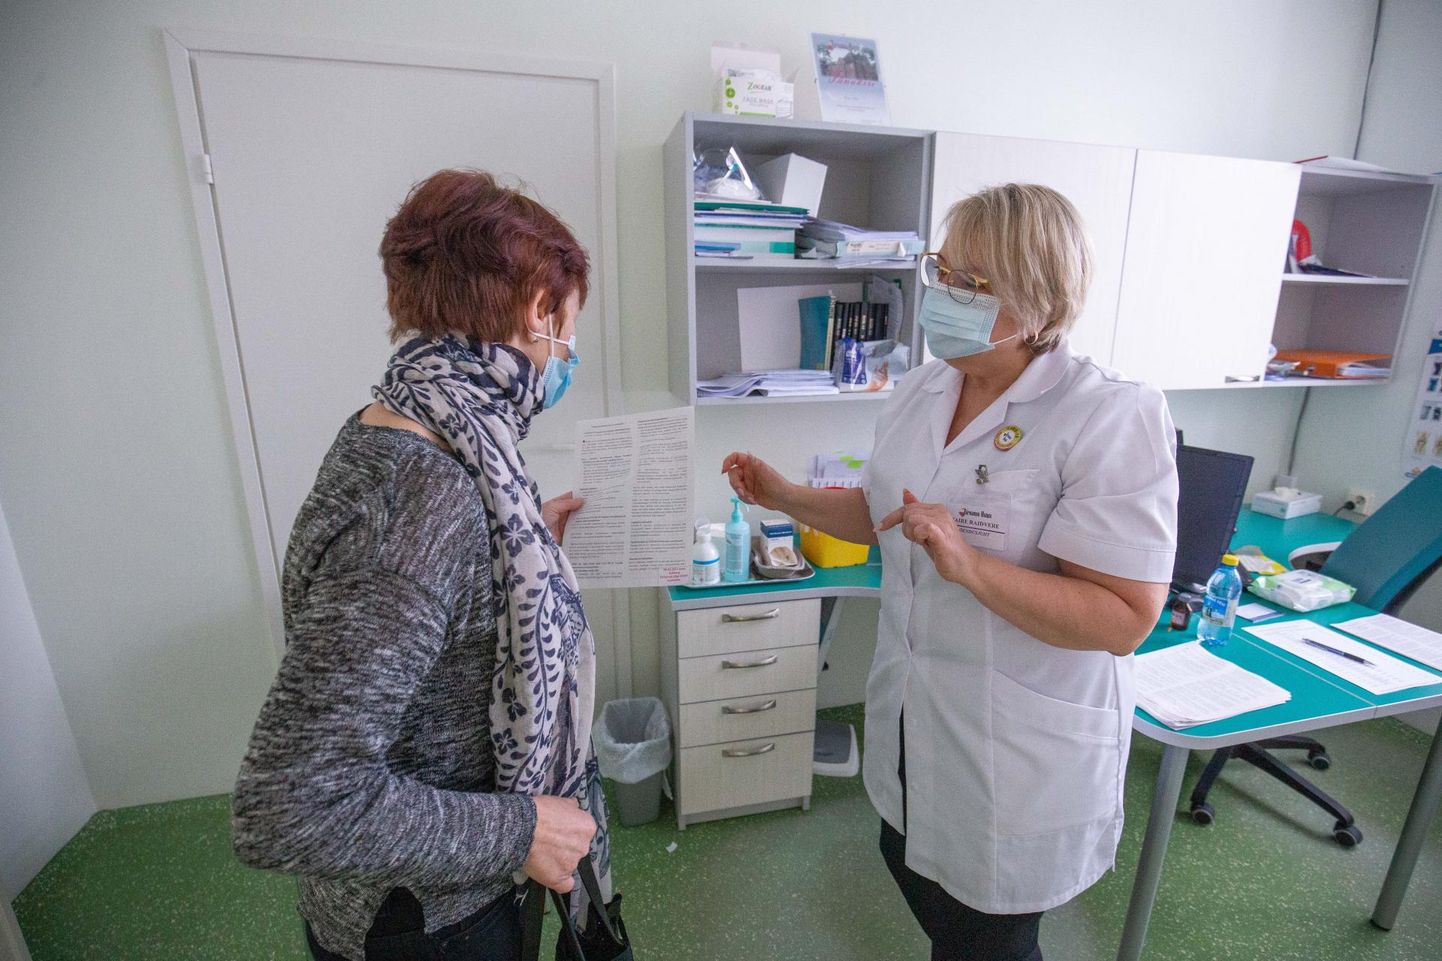 Lisaks koroonapatsientide ravile osales Järvamaa haigla möödunud aastal ka ennetustöös, vaktsineerides sadu inimesi. Maire Raidvere (paremal) koordineeris vaktsineerimist nii haiglas kui ka mujal.